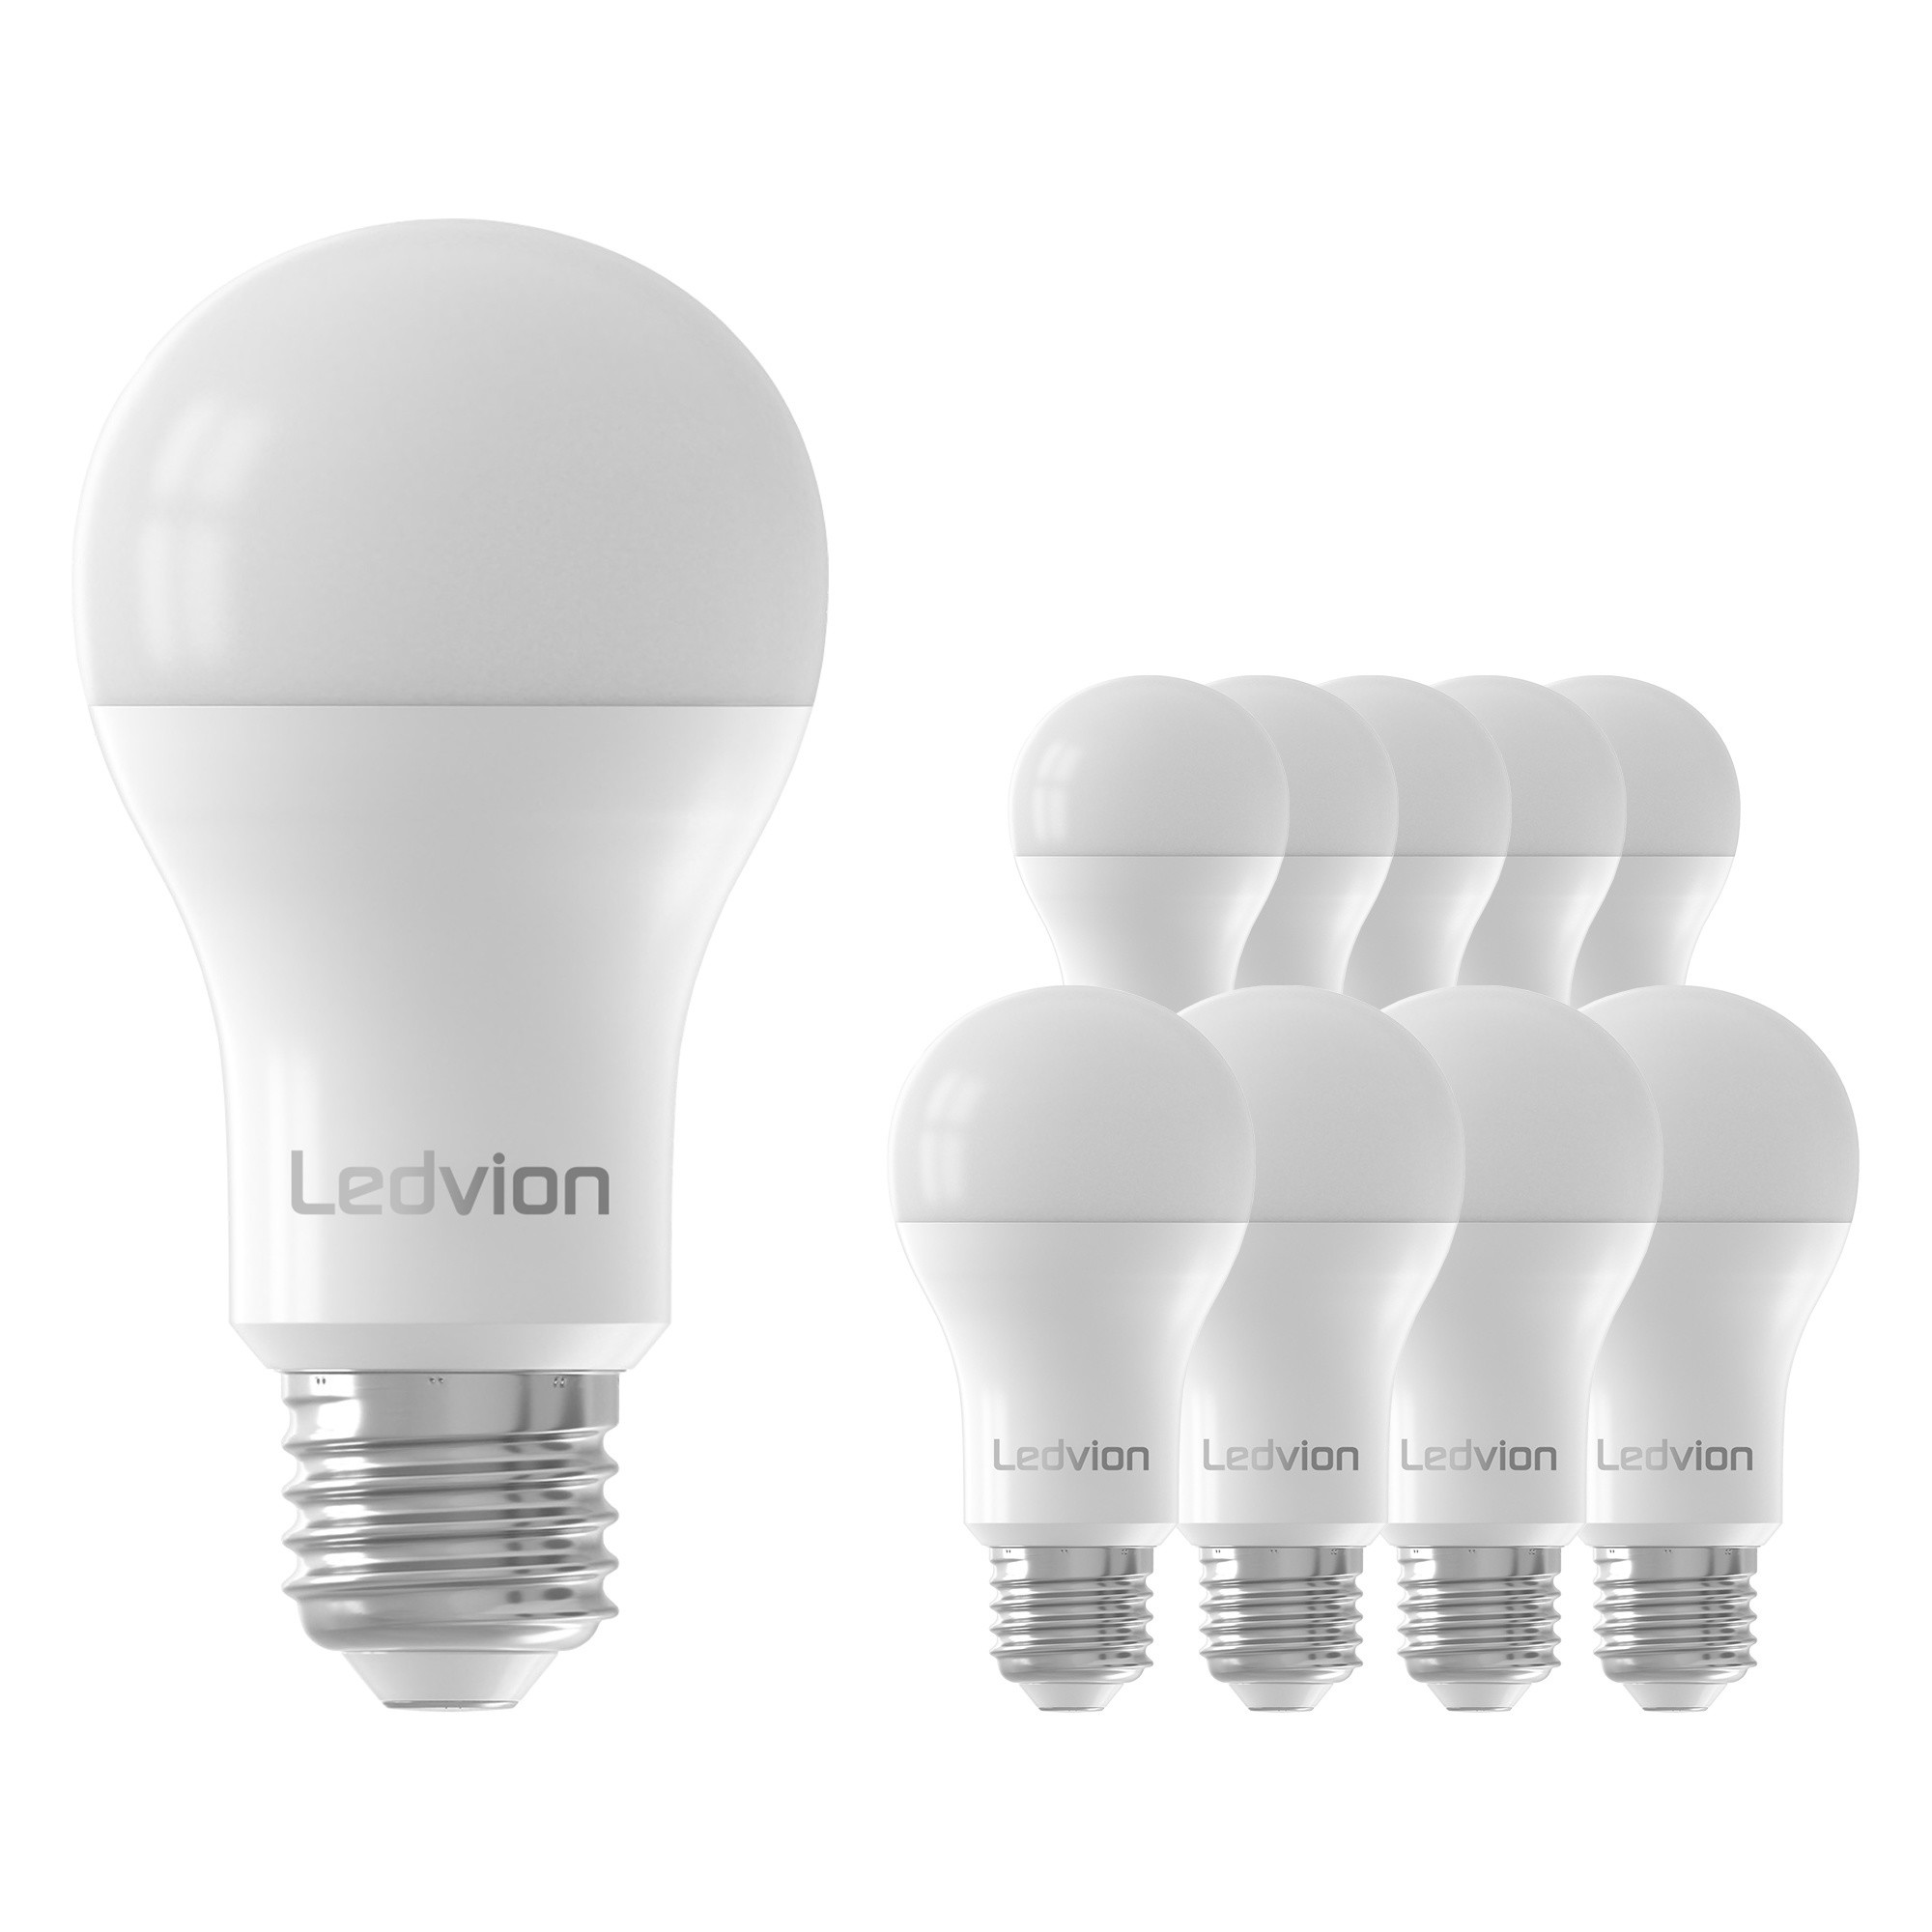 Ledvion Dimbare Lamp - 8.8W - 6500K - 806 Lumen Lightexpert.nl